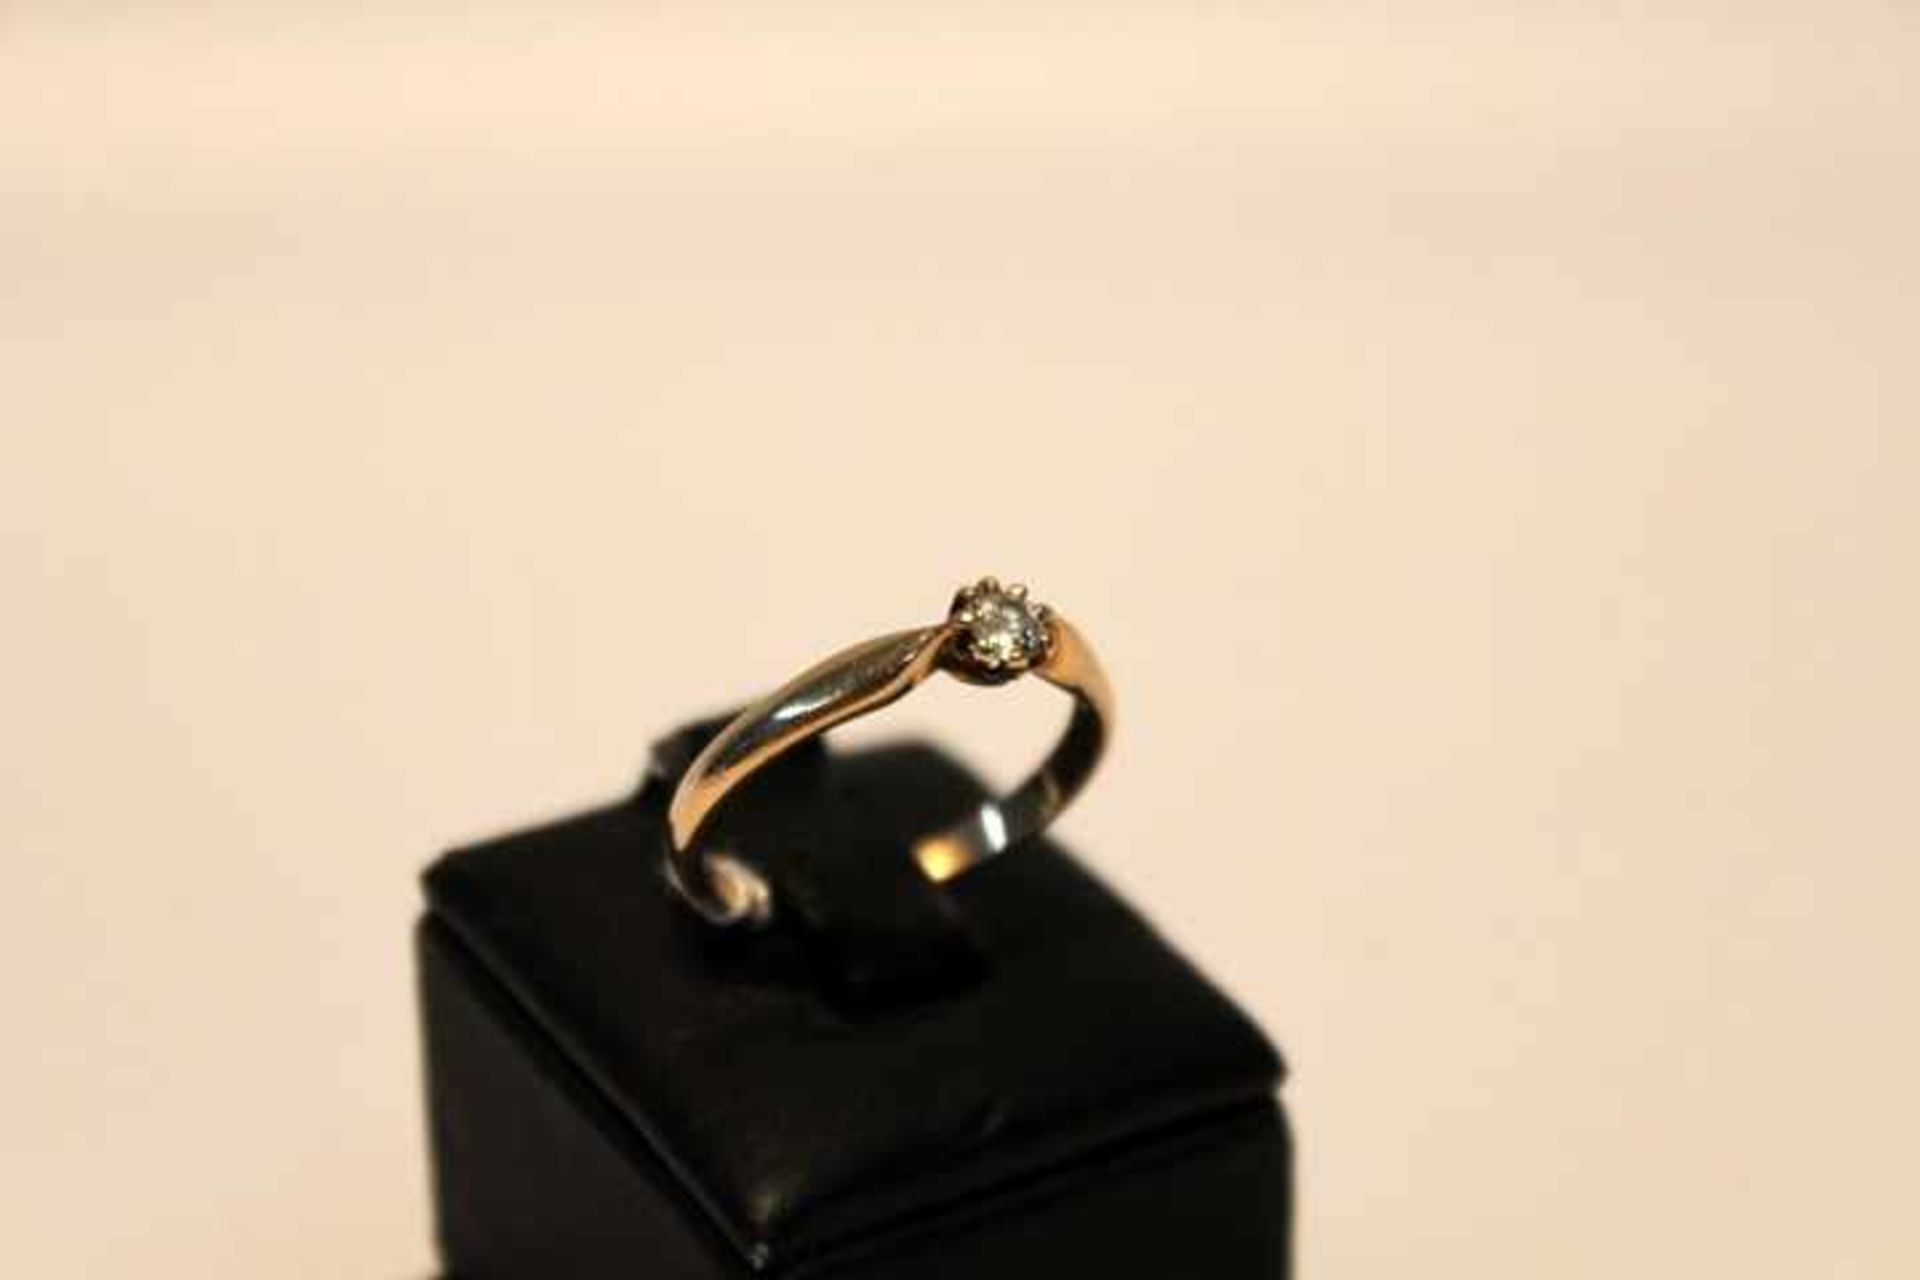 585/14kt Ring Gelbgoldmit Brillant 0,10ctRW 16mmGewicht 1,78gr.getragen-gebraucht - Bild 2 aus 2